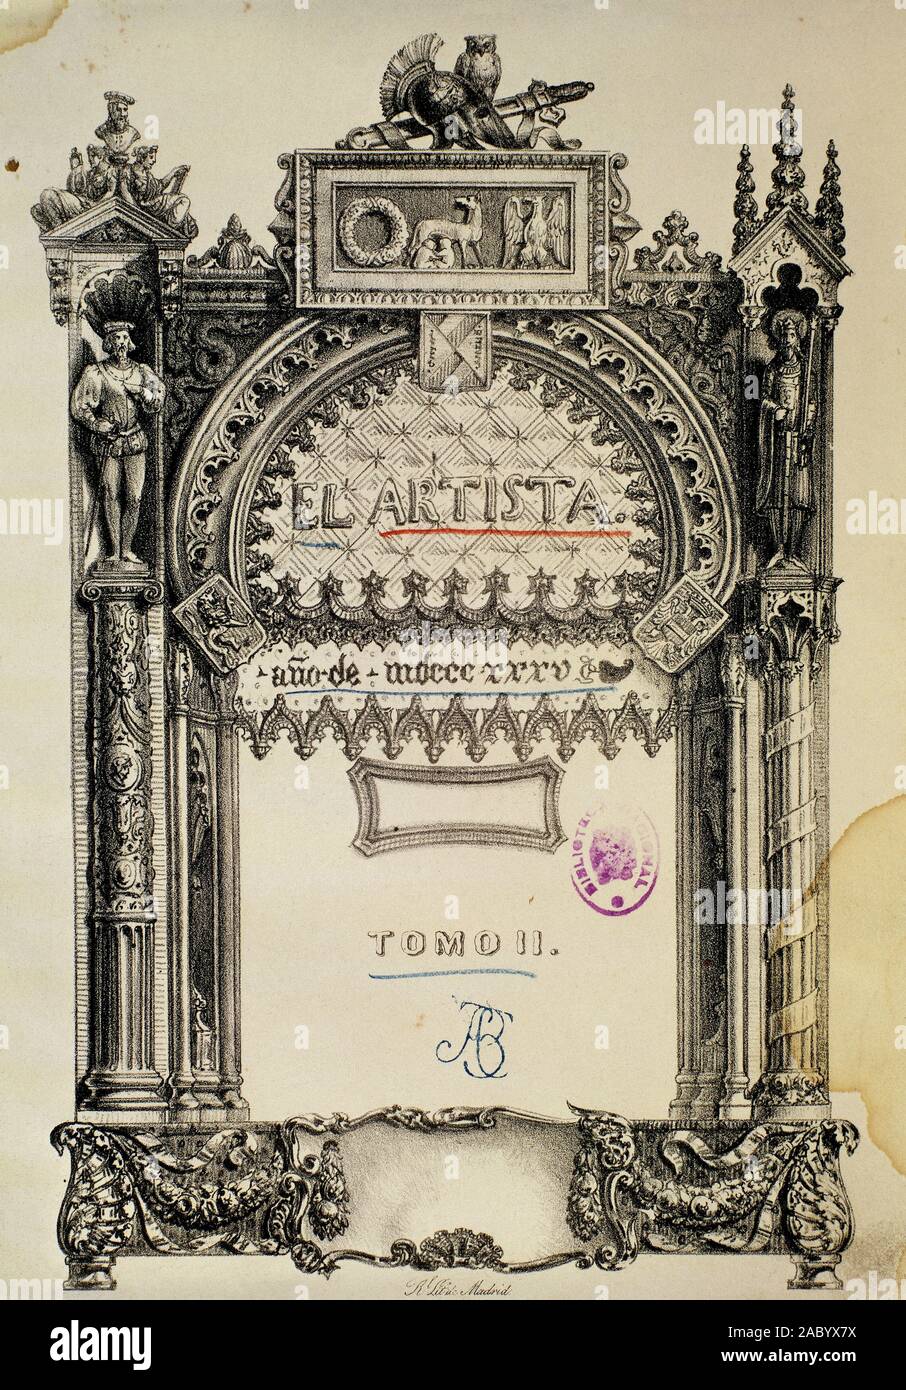 EL ARTISTA 1835. Location: BIBLIOTECA NACIONAL-COLECCION. MADRID. SPAIN. Stock Photo